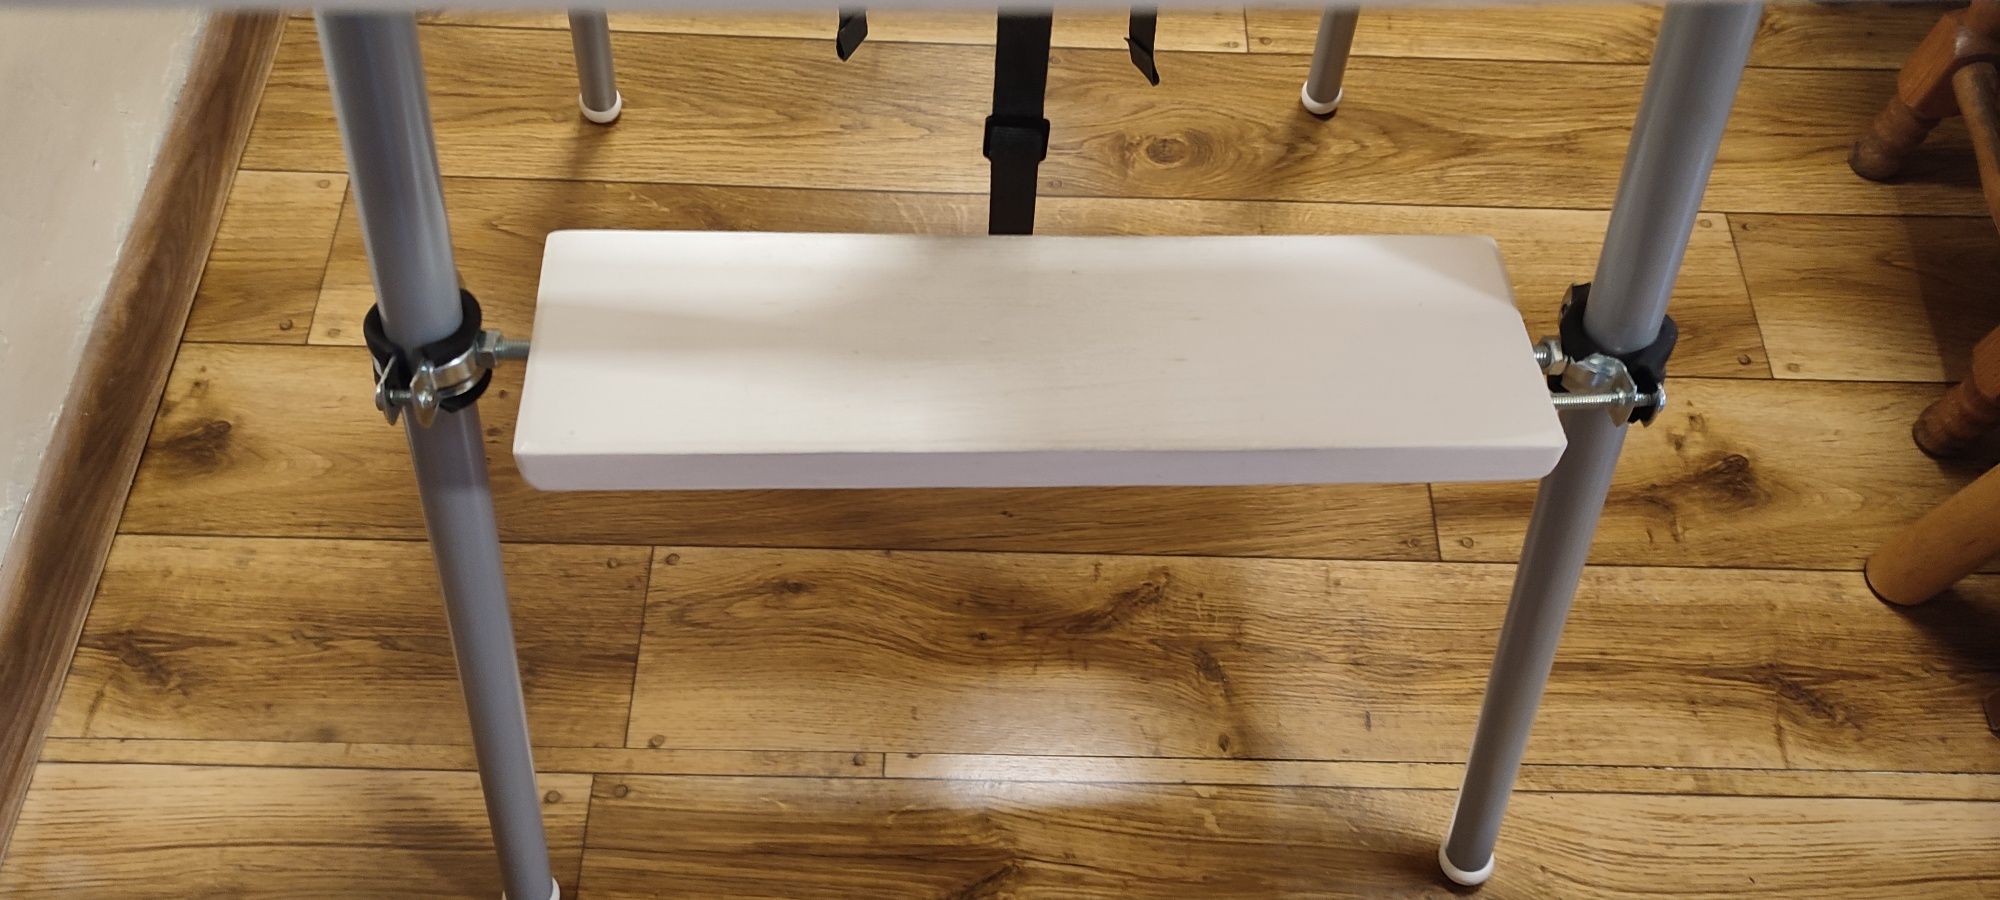 Podnóżek krzesełka Ikea antilop